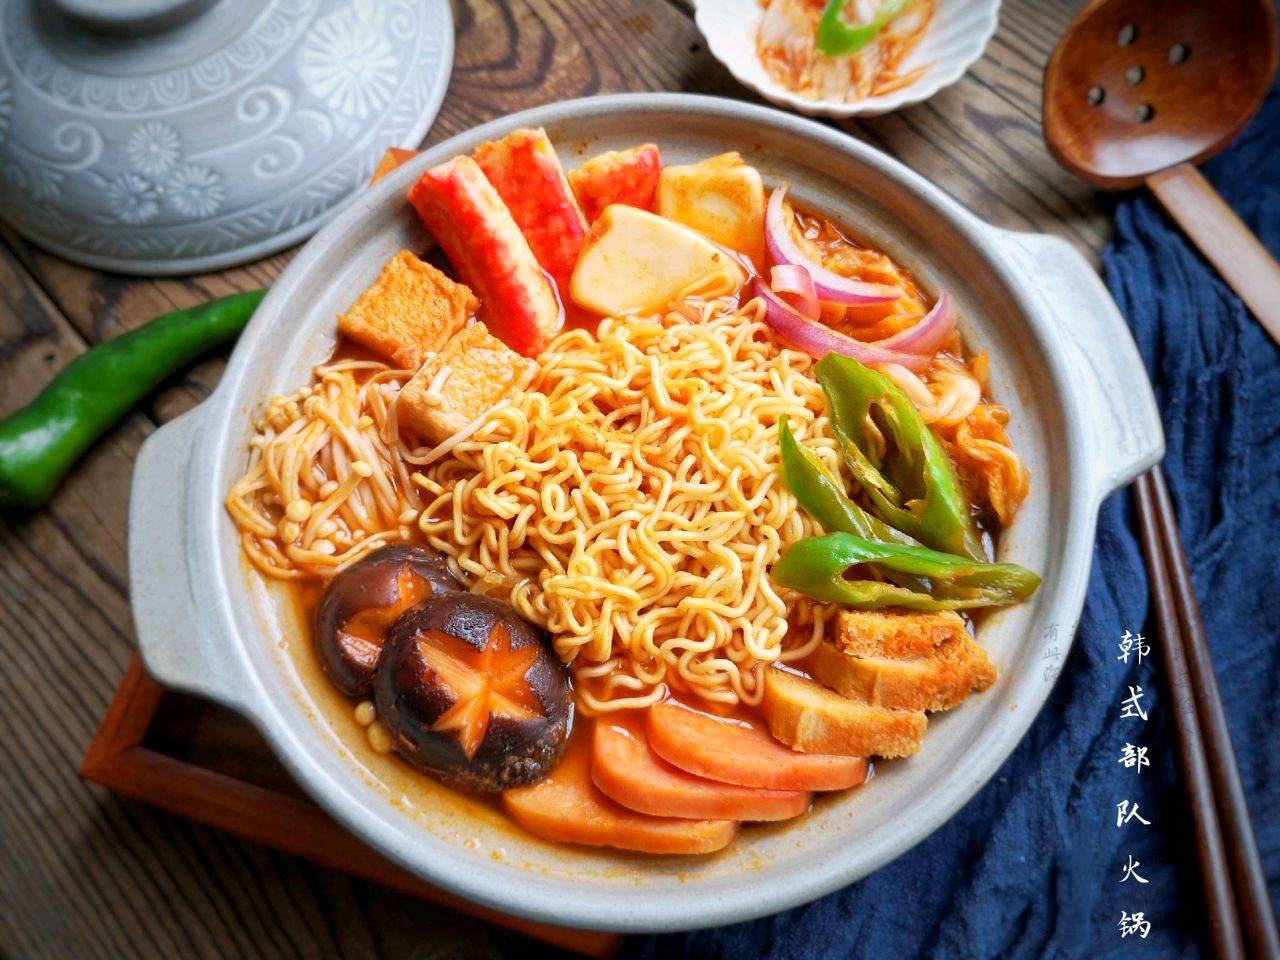 原创在家做韩式部队火锅,简单方便,丰盛美味,是招待朋友的必备菜